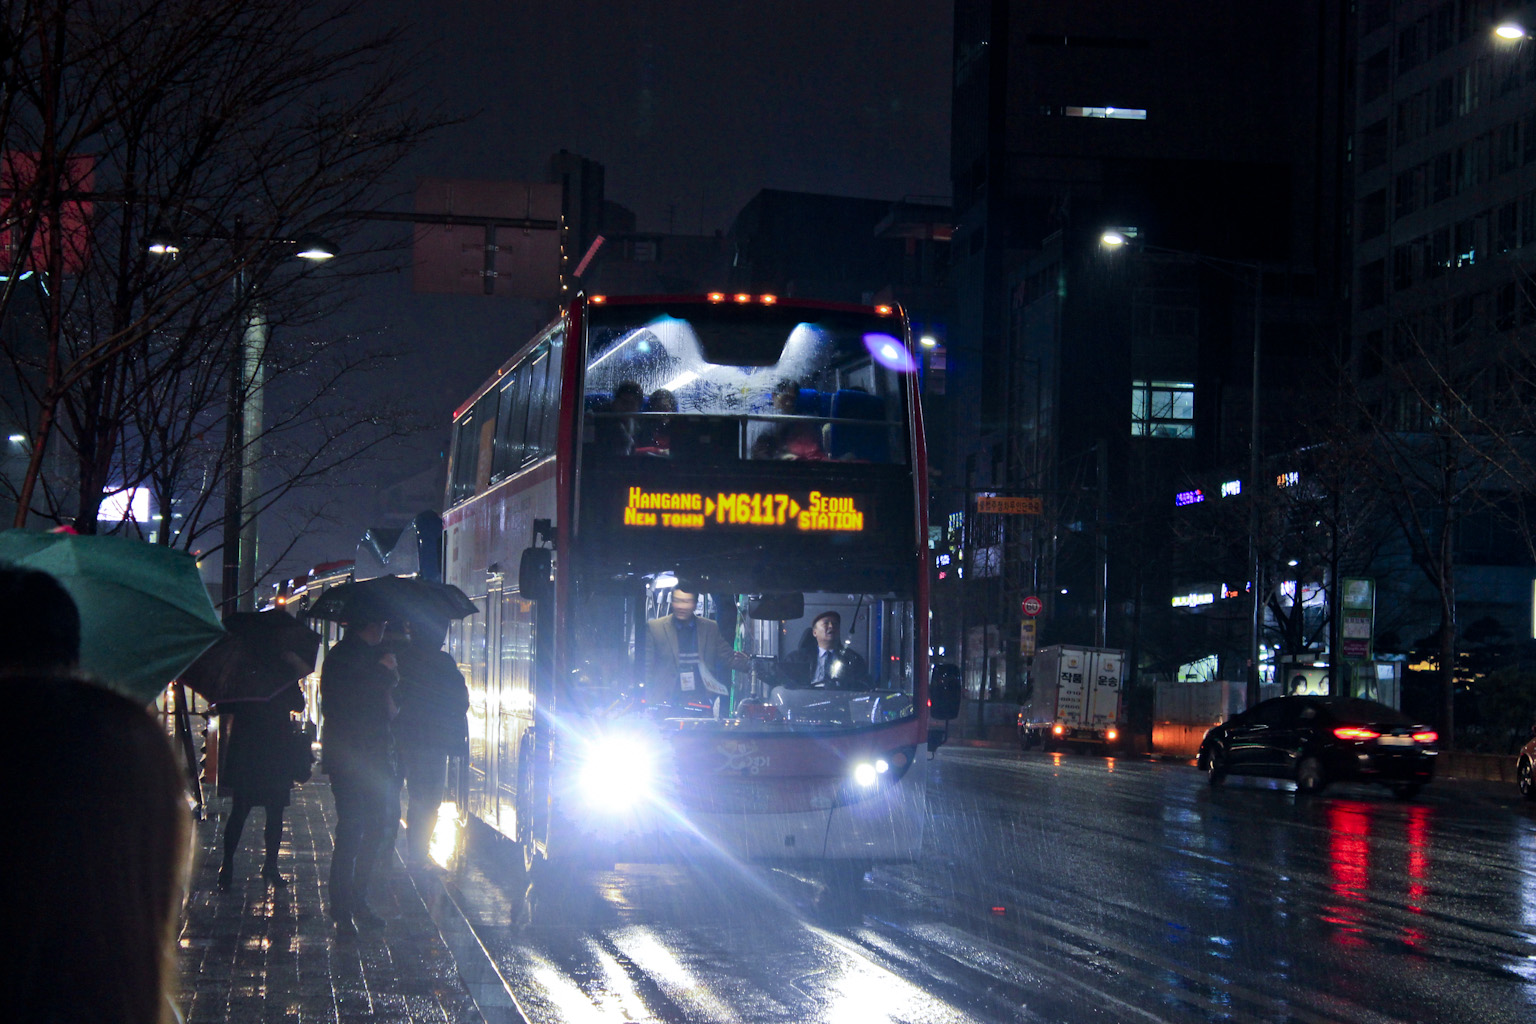 M6117은 급행 BRT로 이층버스가 활용될 수 있음을 보여주는 사례였다.